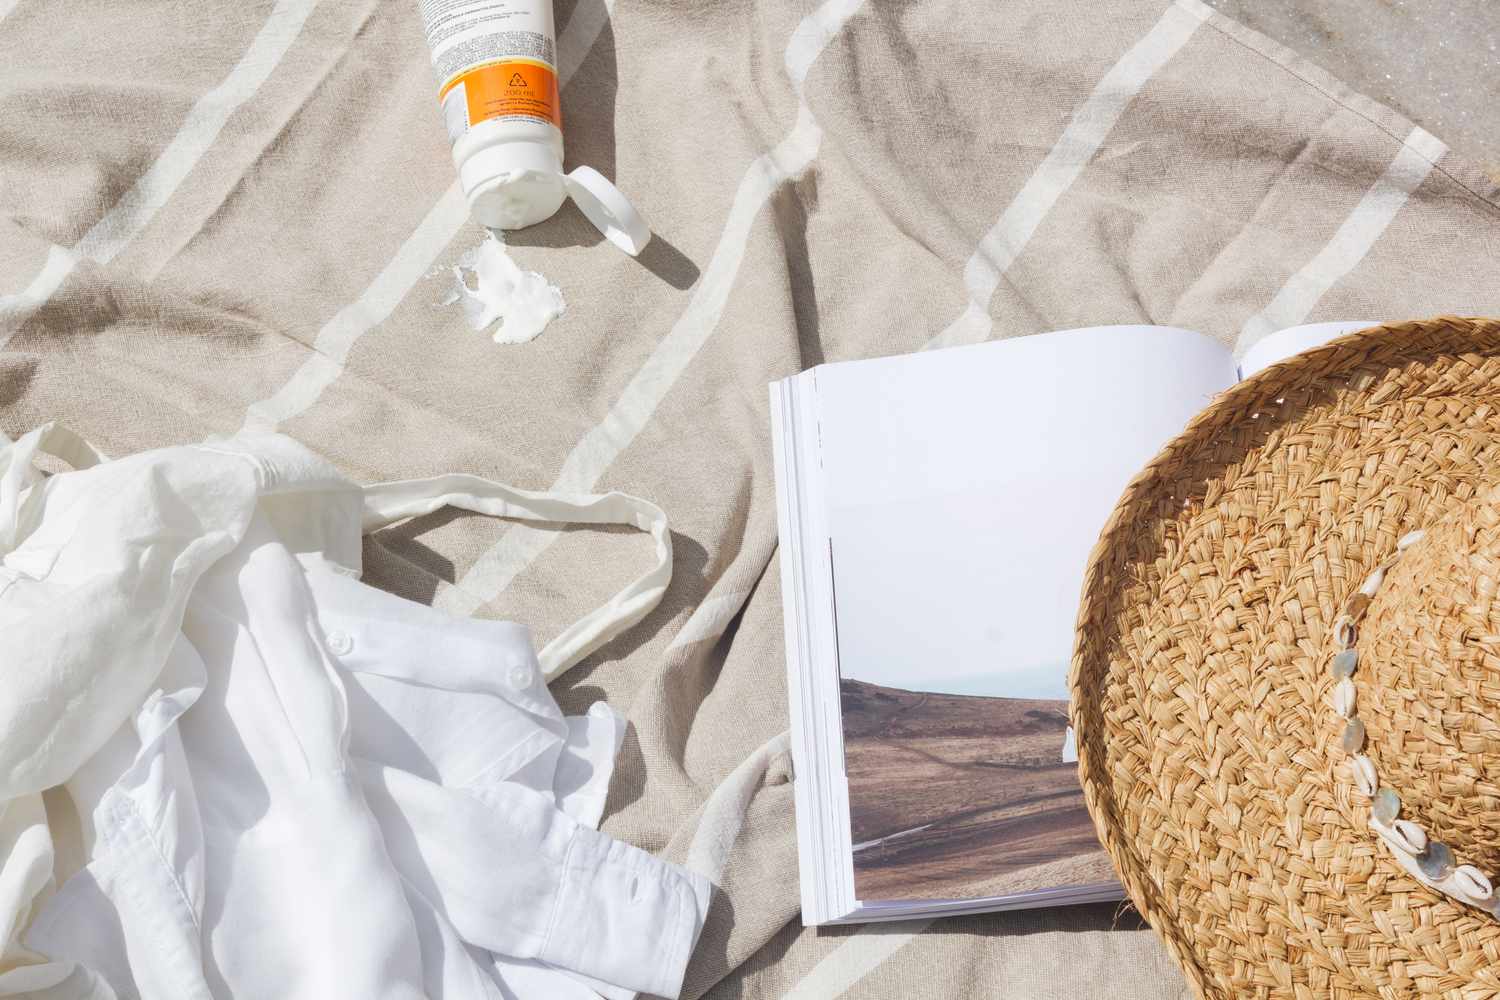 Sonnenschutzmittel auf einem Handtuch